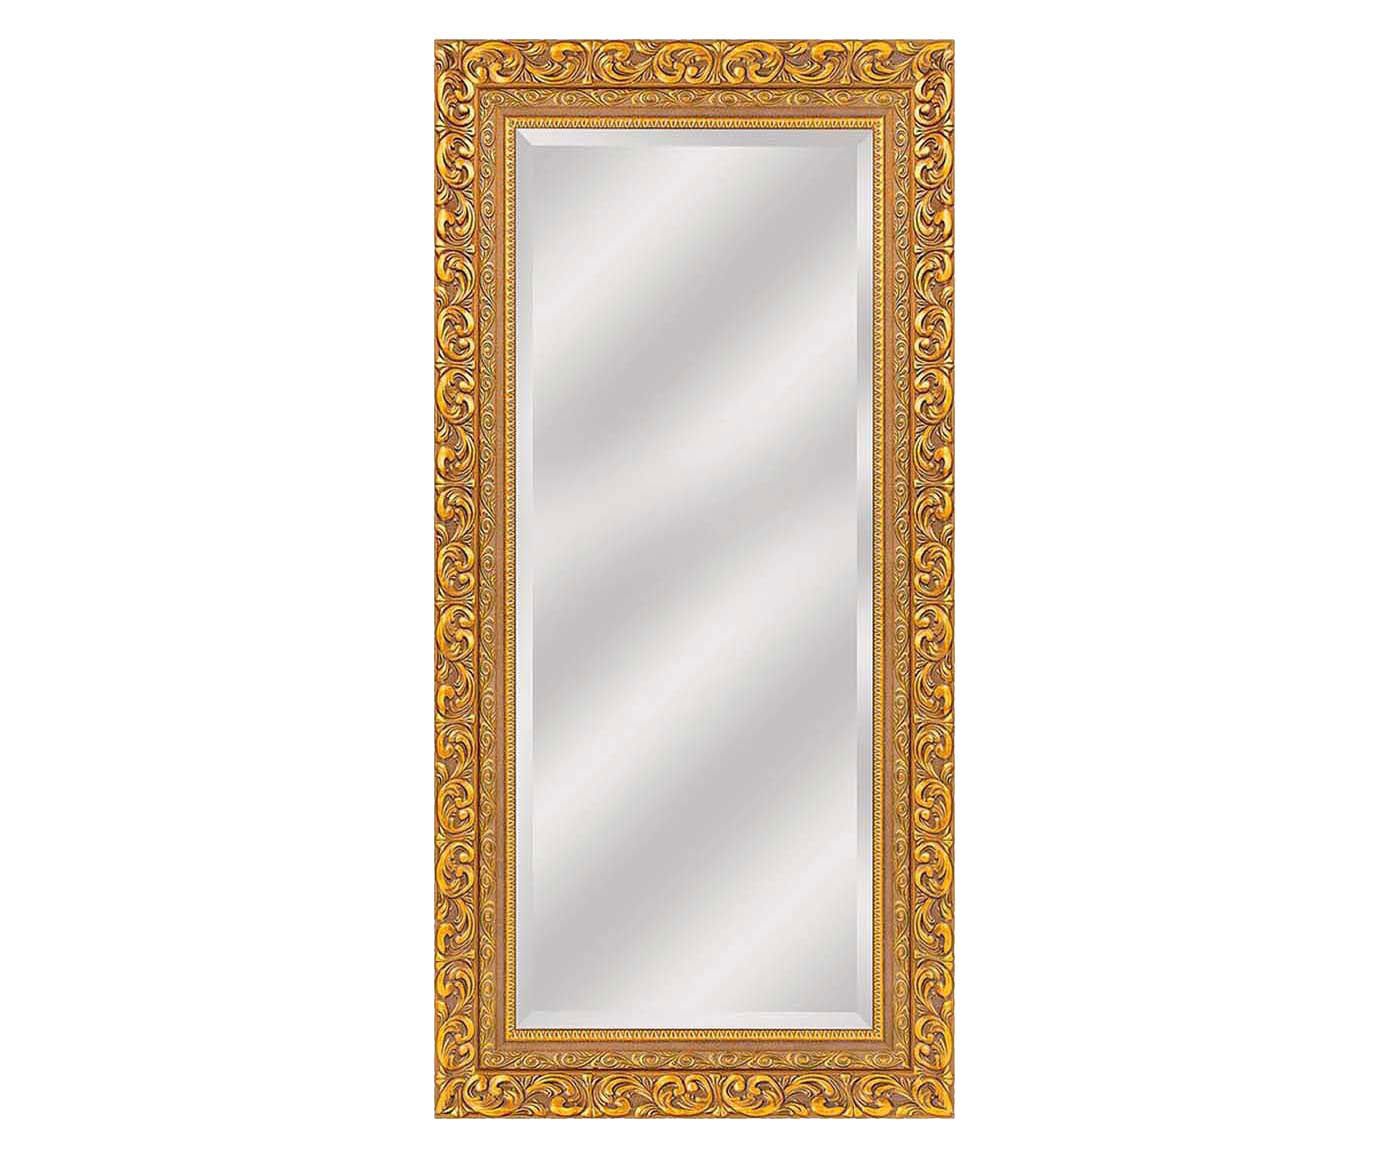 Espelho andrad soleil - 85x175cm | Westwing.com.br